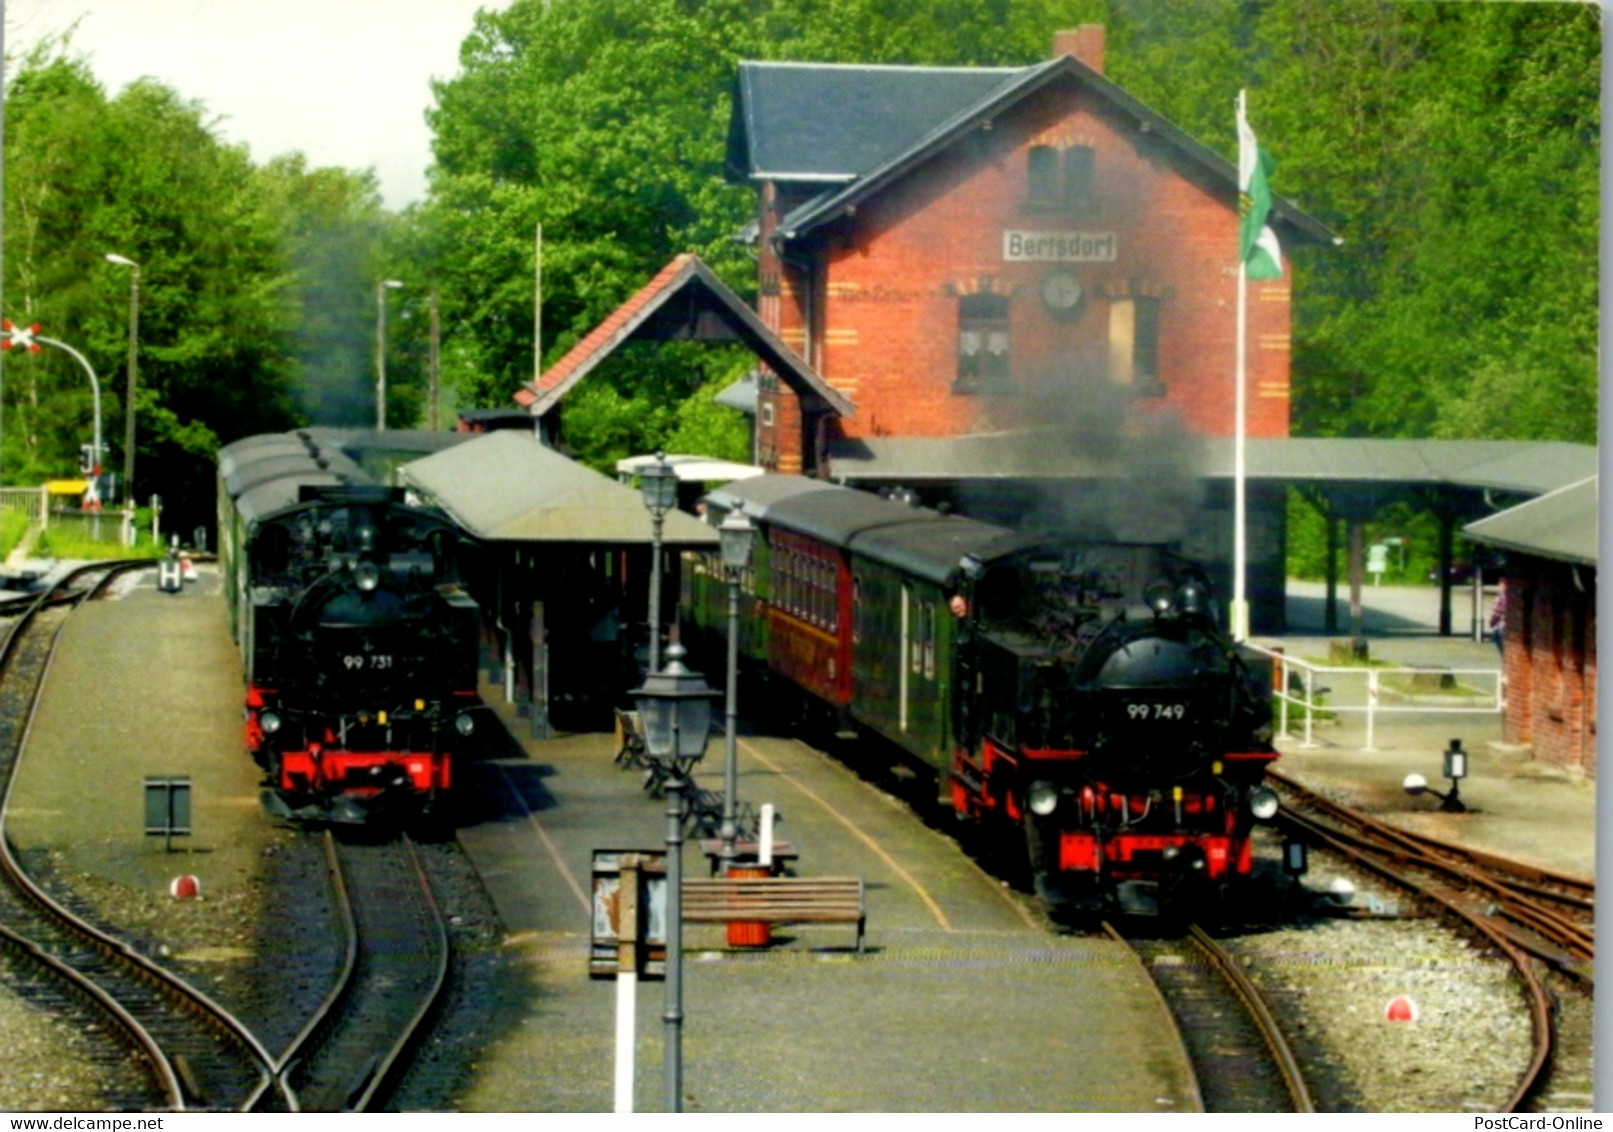 11692 - Deutschland - Bertsdorf , Bahnhof Mit Schmalspurdampflokomotiven , 99 731 U. 99 749 - Gelaufen - Bertsdorf-Hoernitz